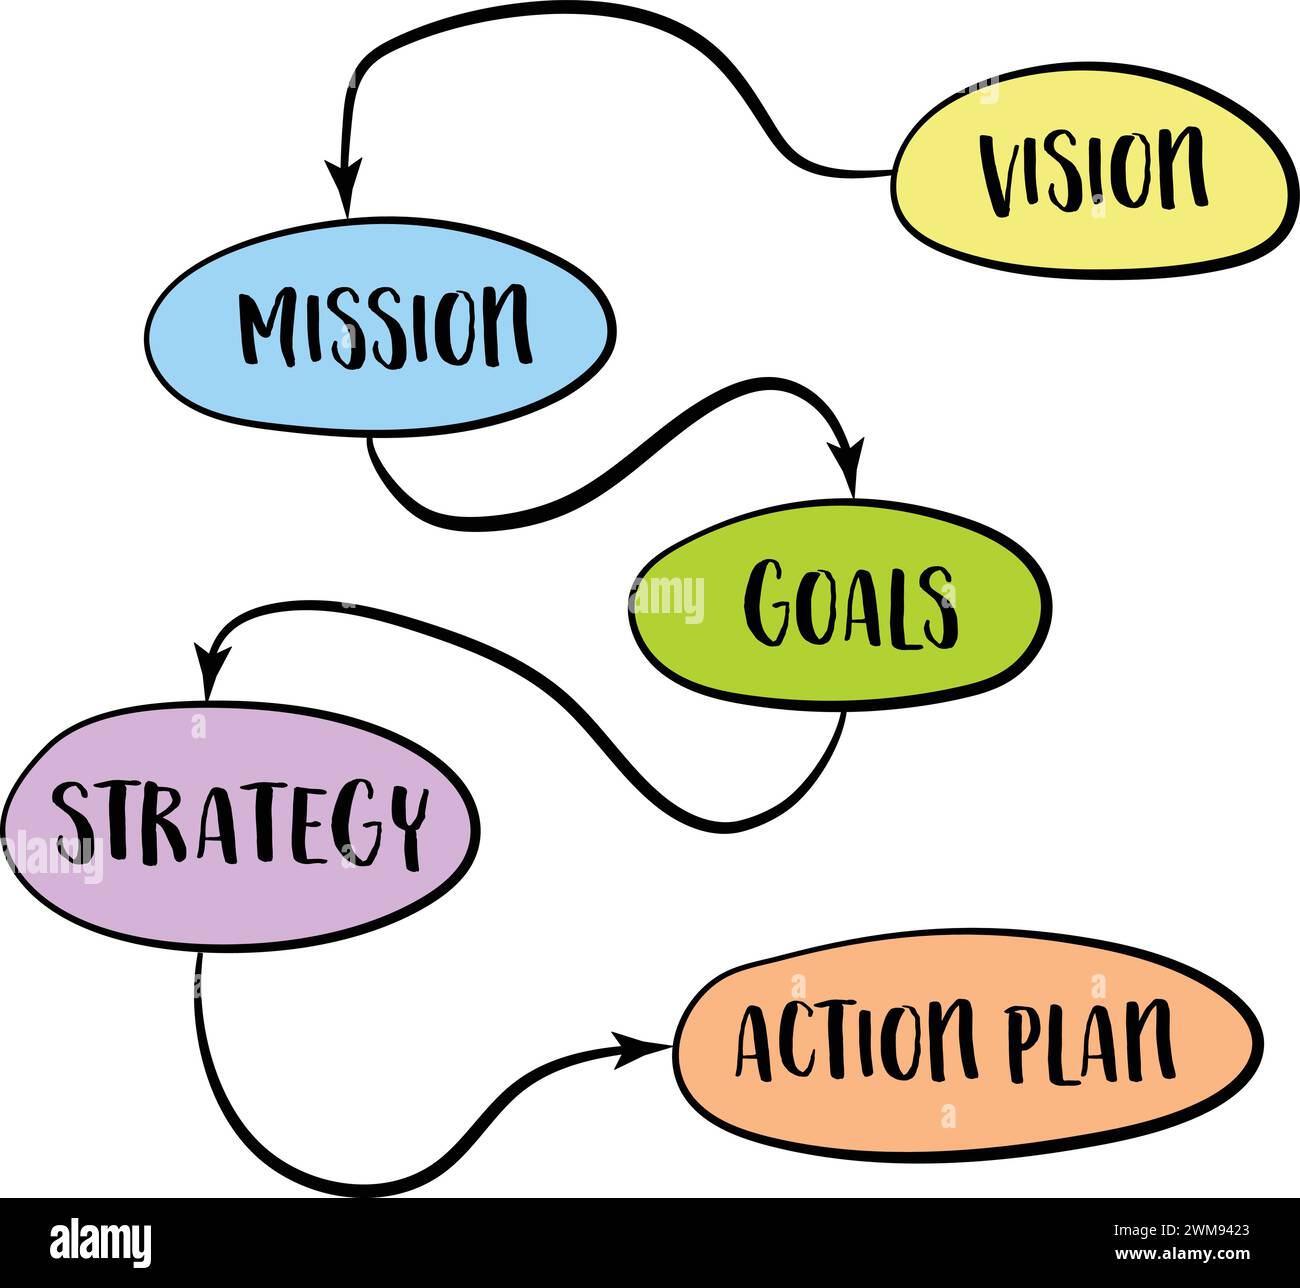 vision, mission, objectifs, stratégie et plan d'action - croquis de diagramme, concept d'entreprise Illustration de Vecteur